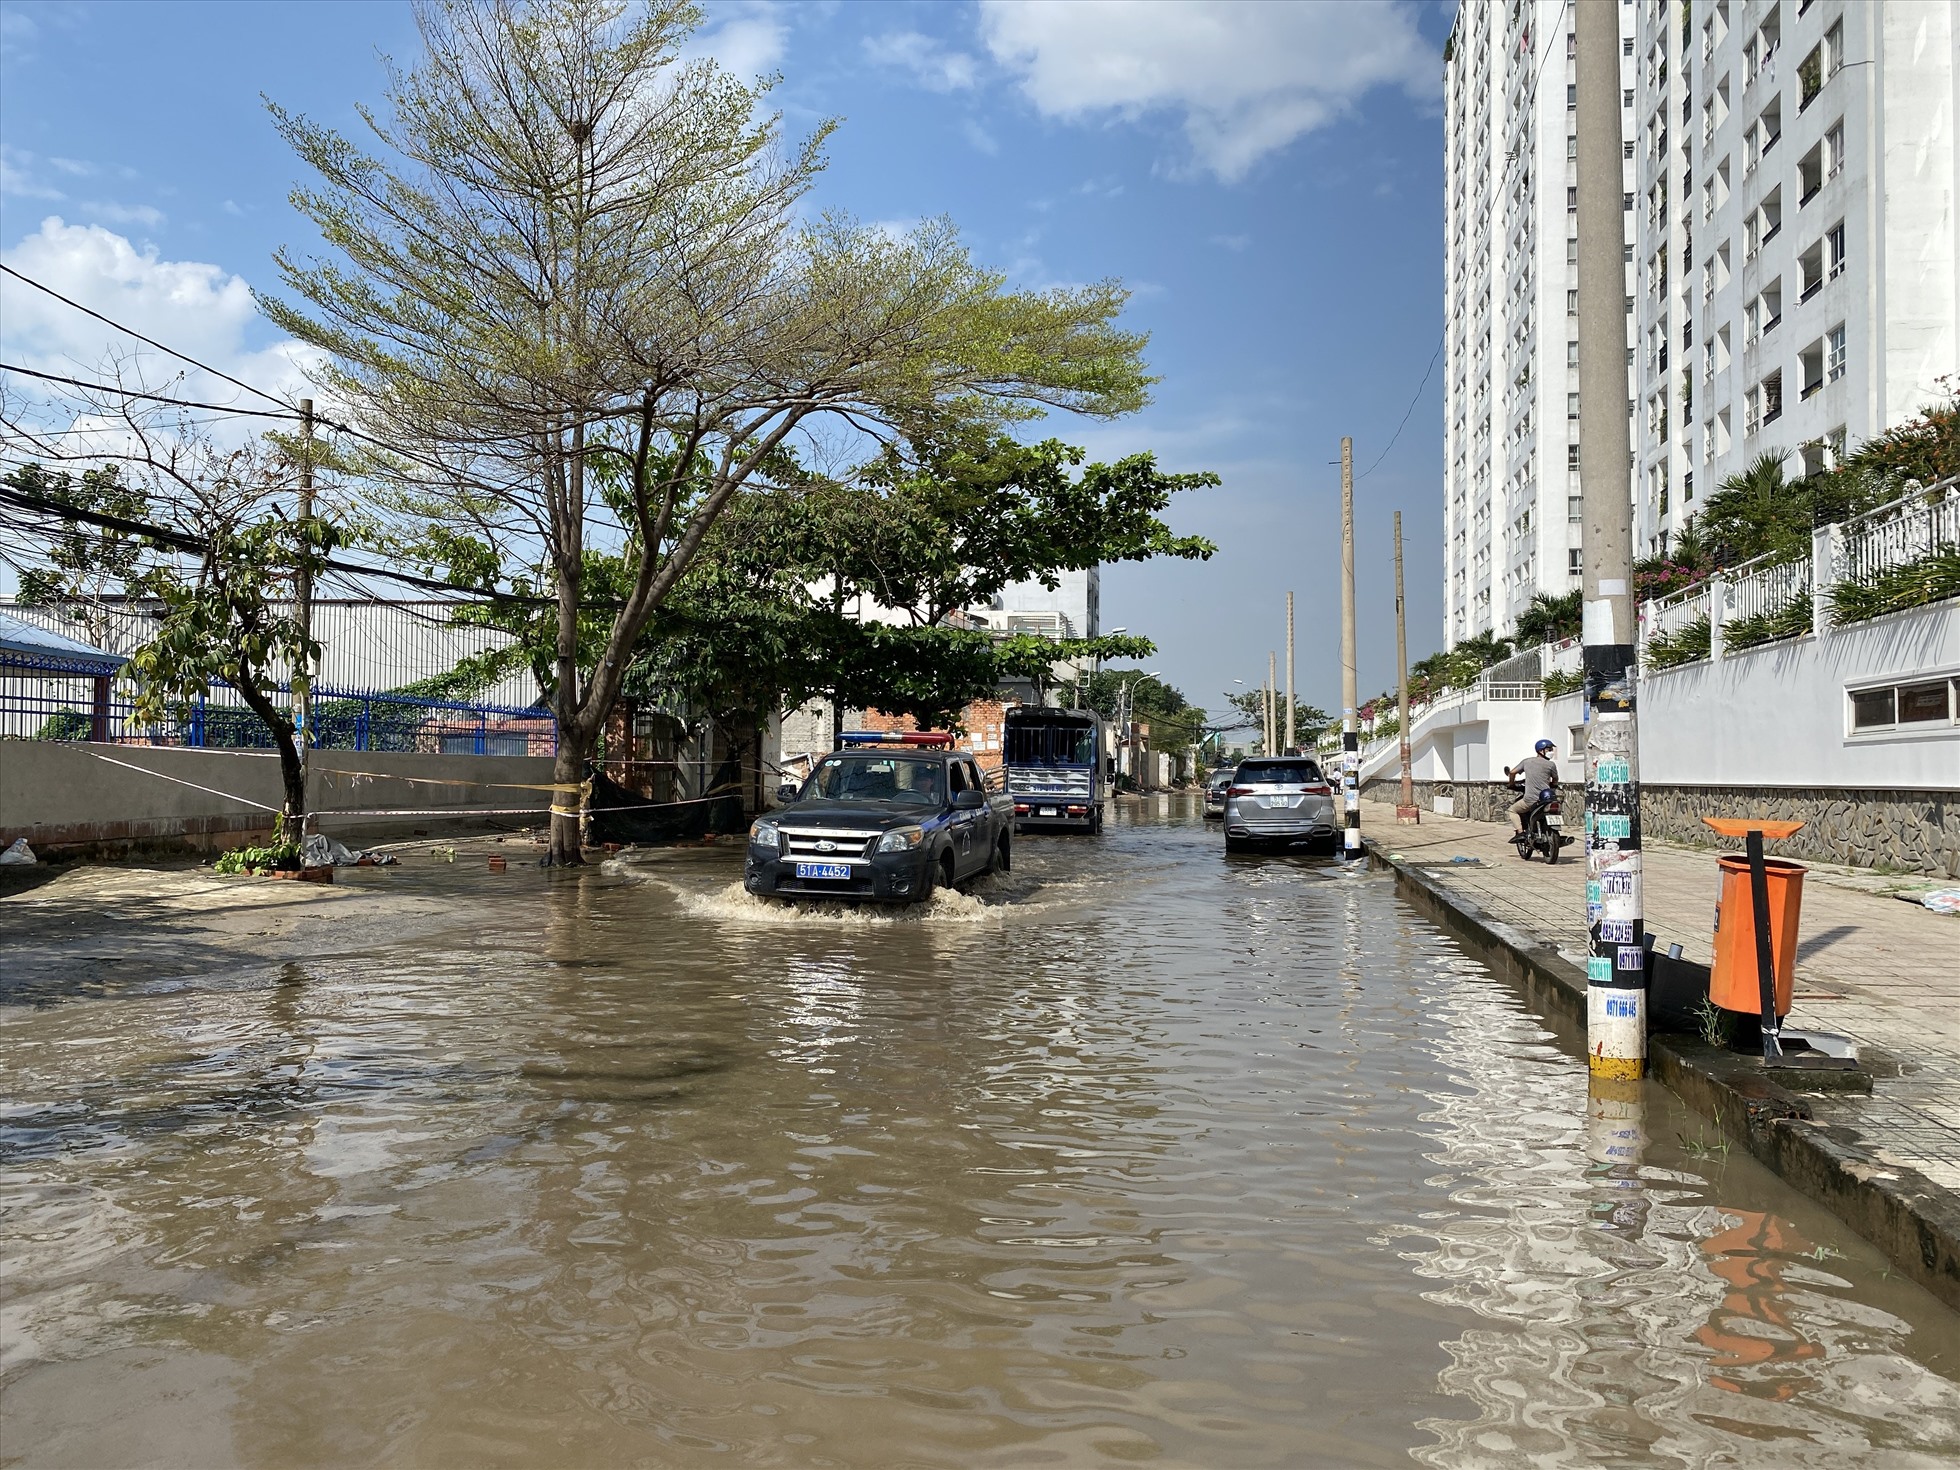 Ghi nhận của Lao Động tại đường số 30 (phường Linh Đông, TP Thủ Đức) trong sáng ngày 30.11, cả đoạn đường này vẫn đang bị ngập nước đến hơn nữa bánh  xe.